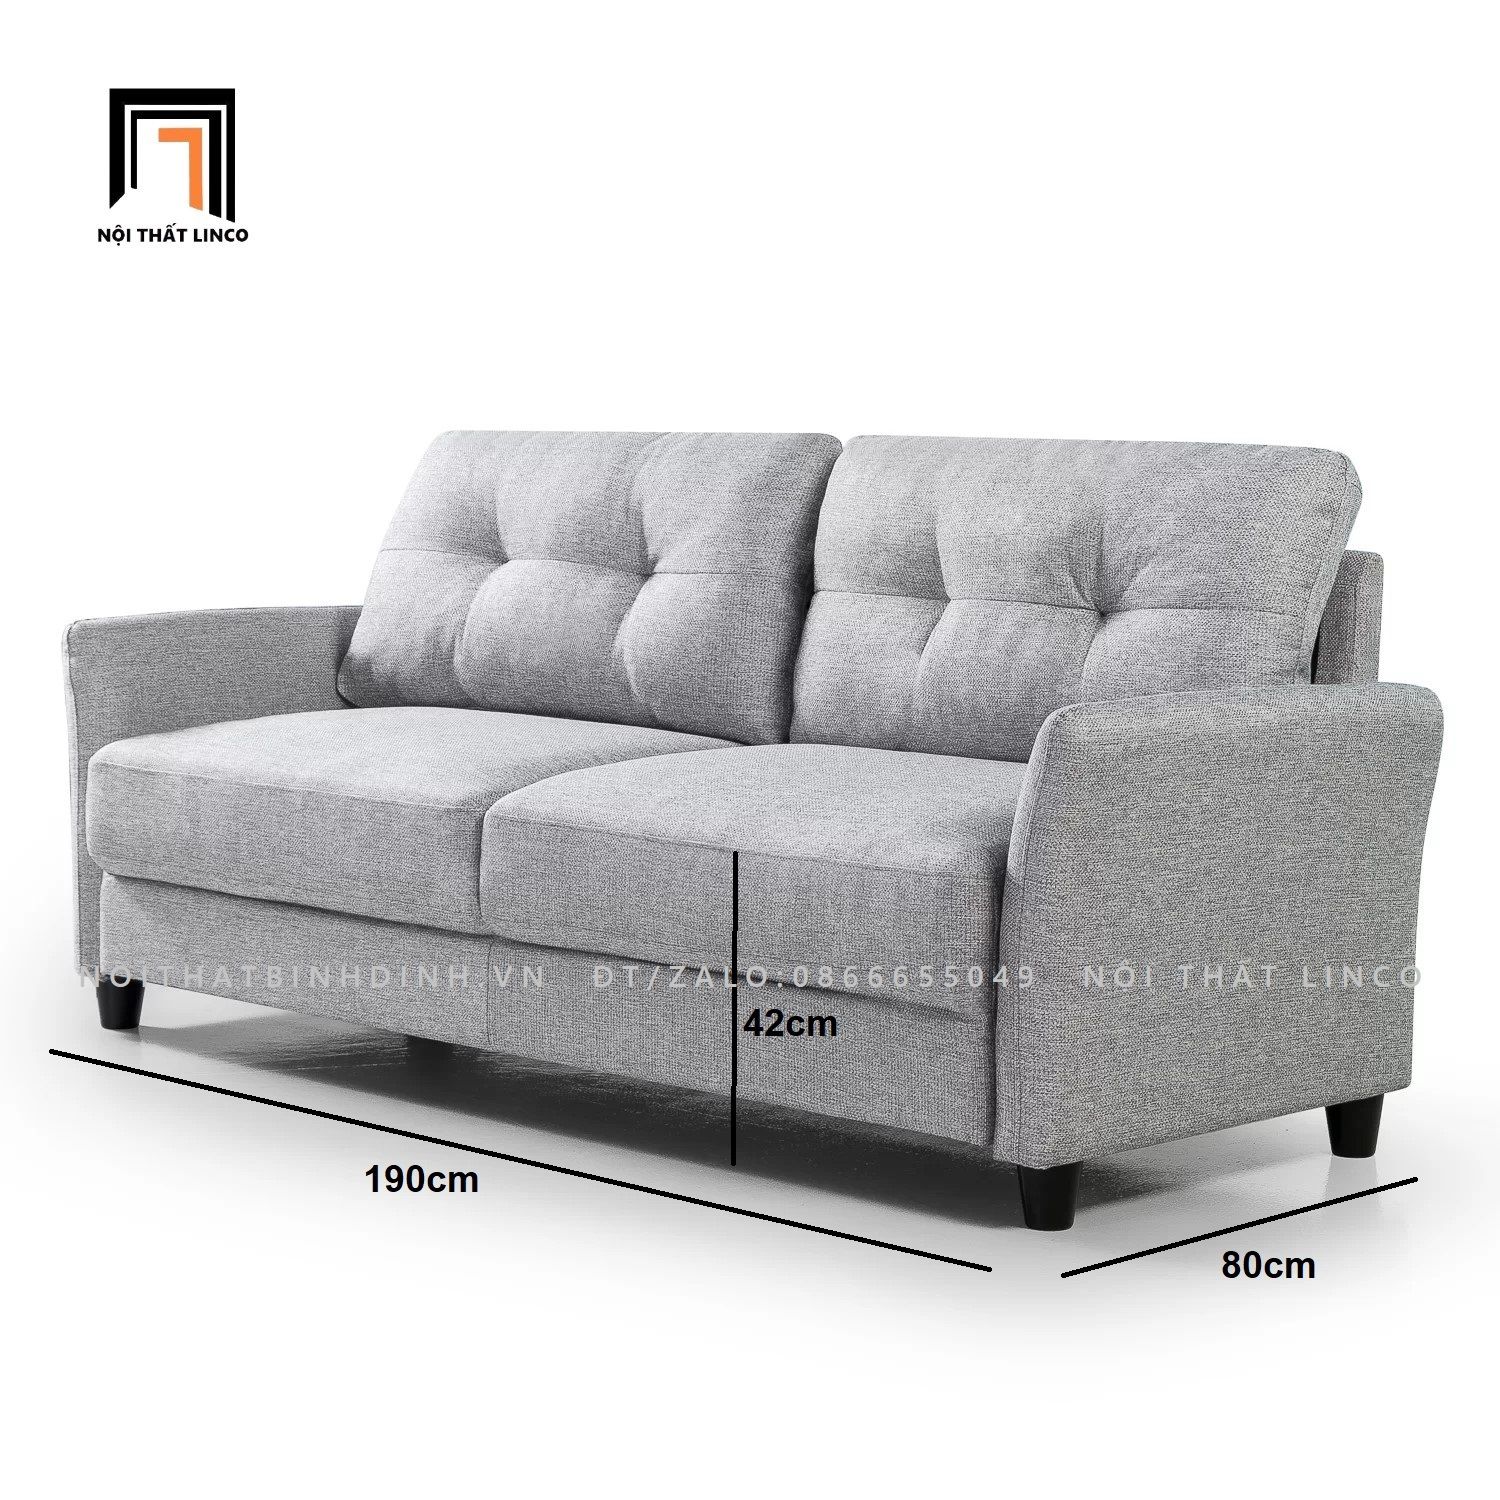  Ghế sofa băng màu xám trắng BT29 Helsley dài 1m9 